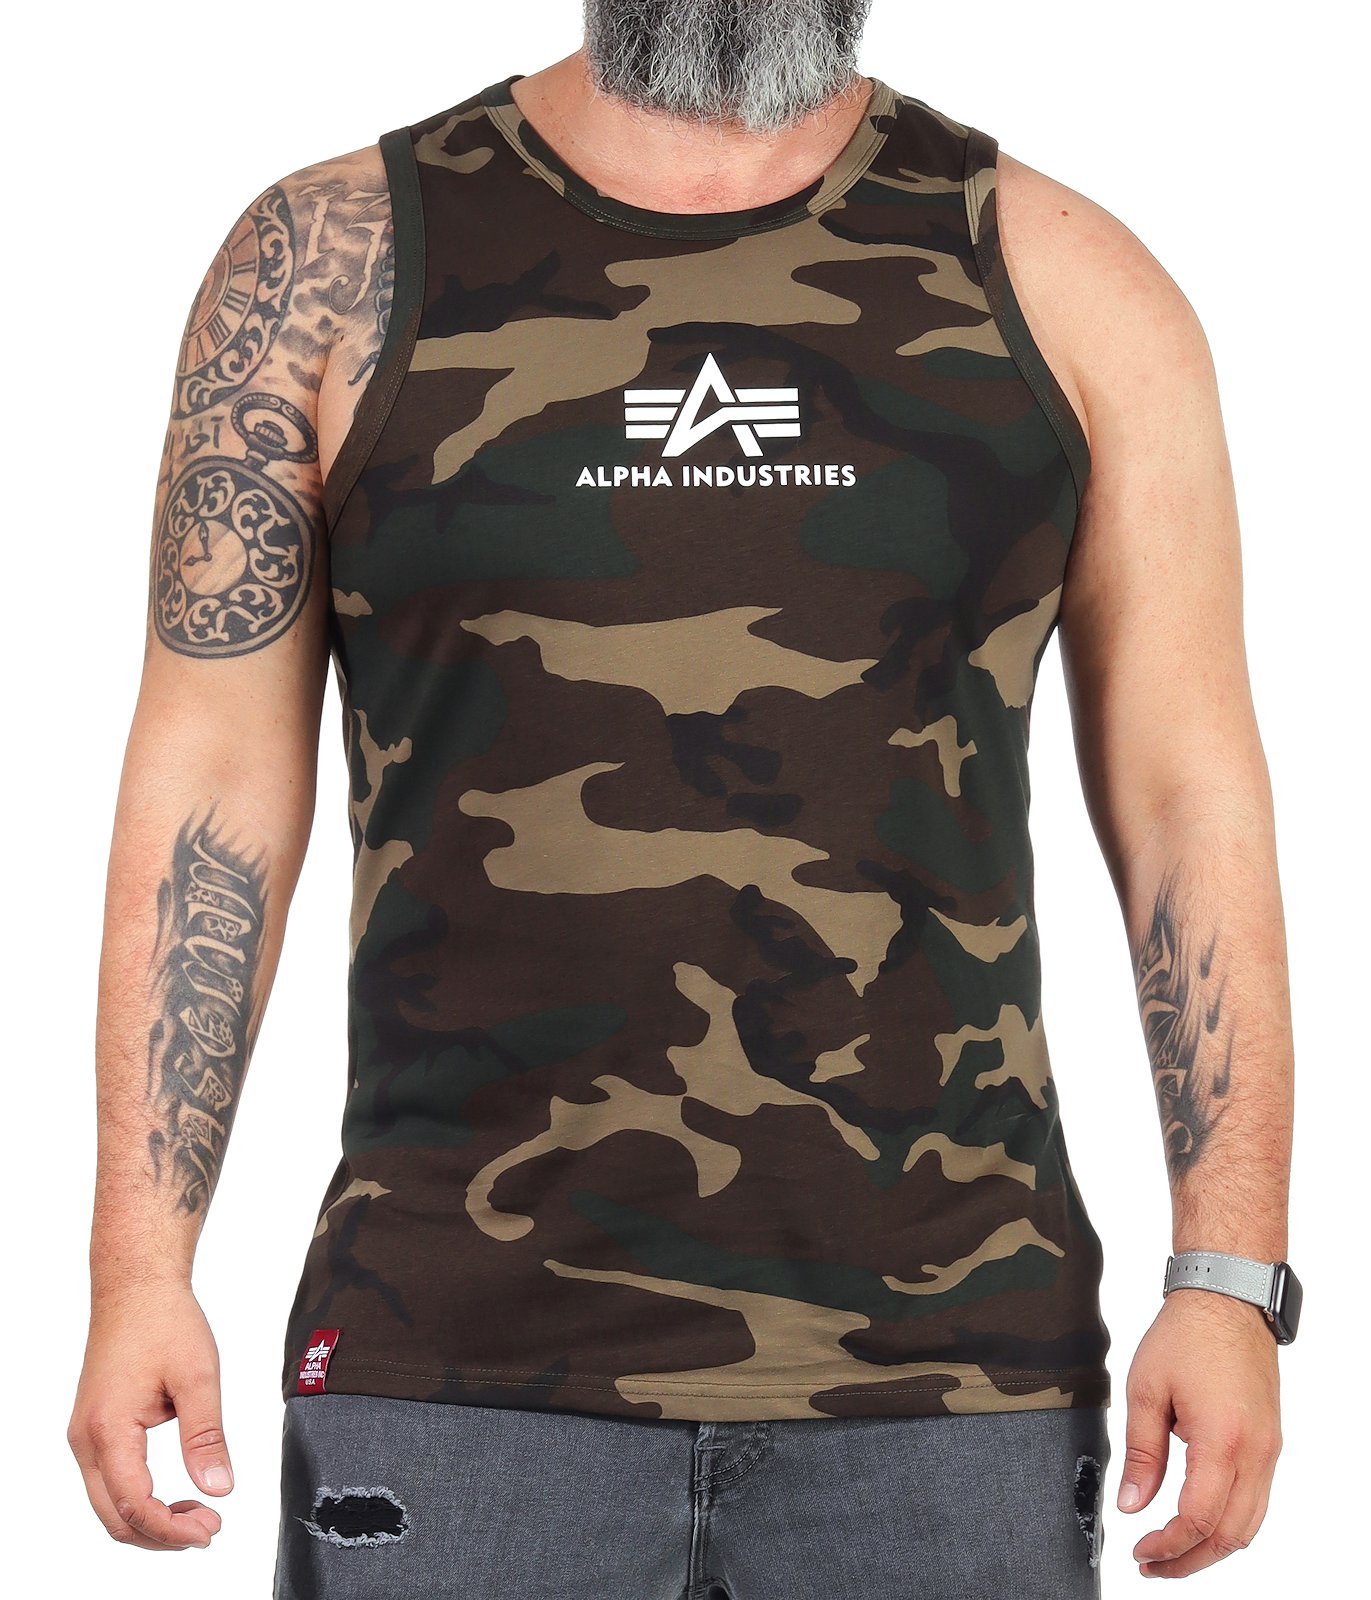 Alpha Industries Herren Tank Top Muskelshirt Achselshirt 126566 Basic Shirt | eBay